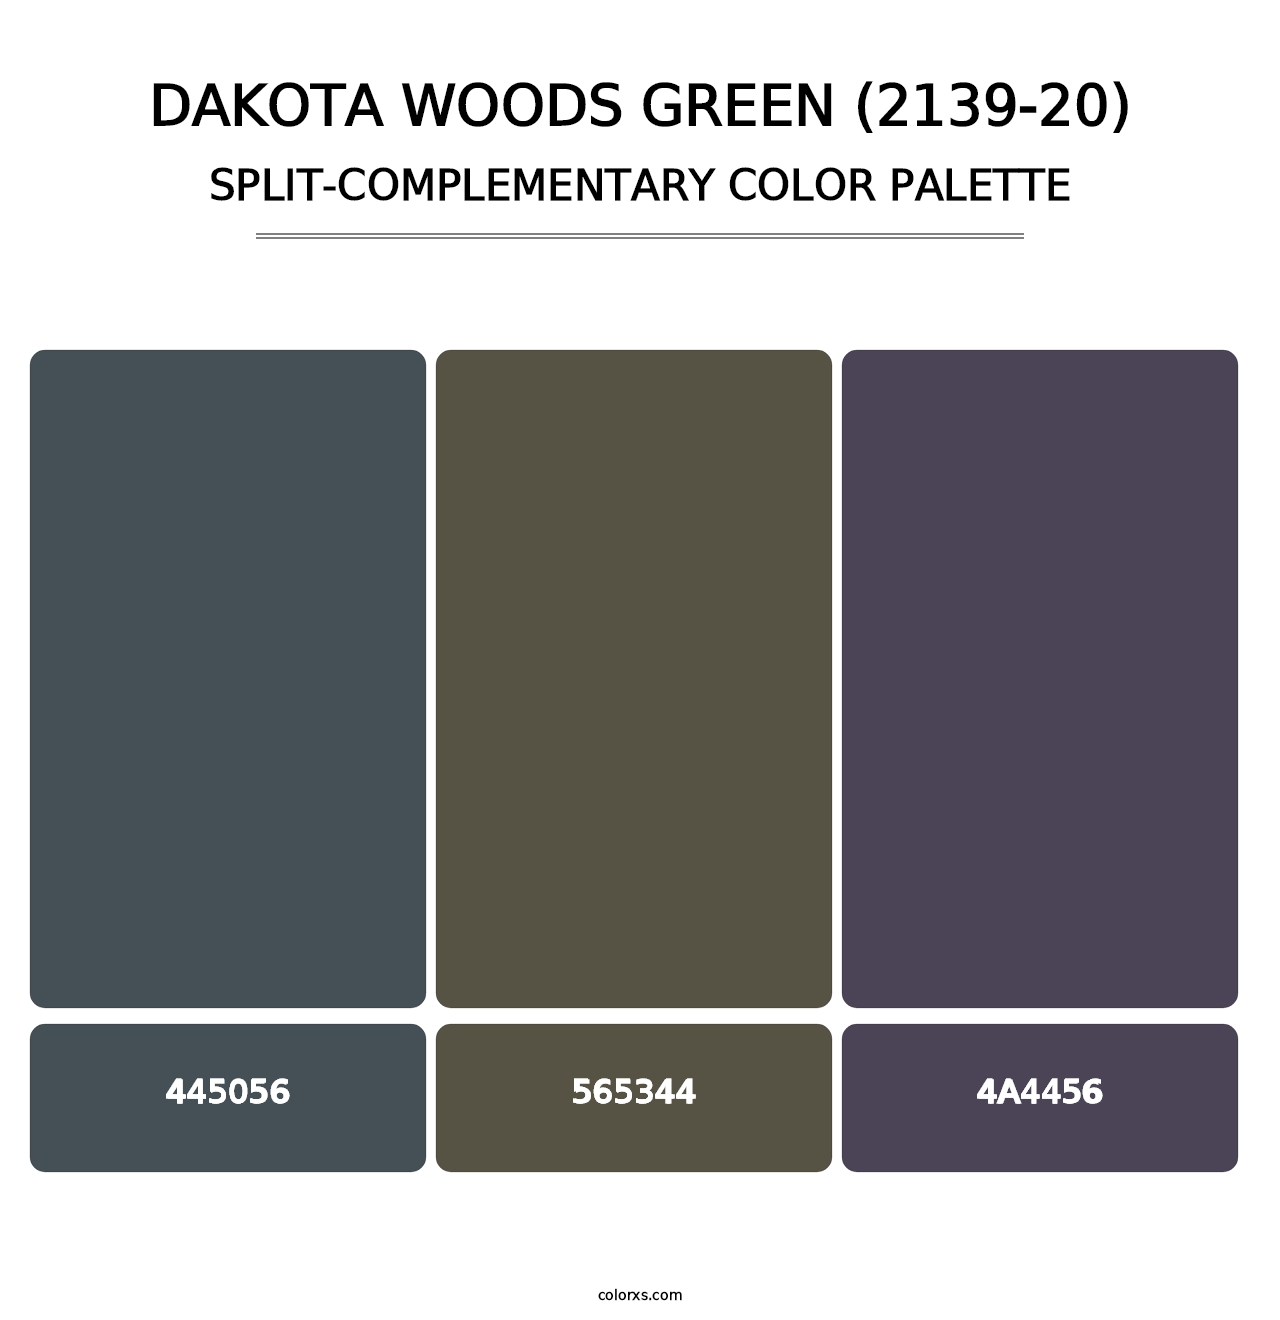 Dakota Woods Green (2139-20) - Split-Complementary Color Palette